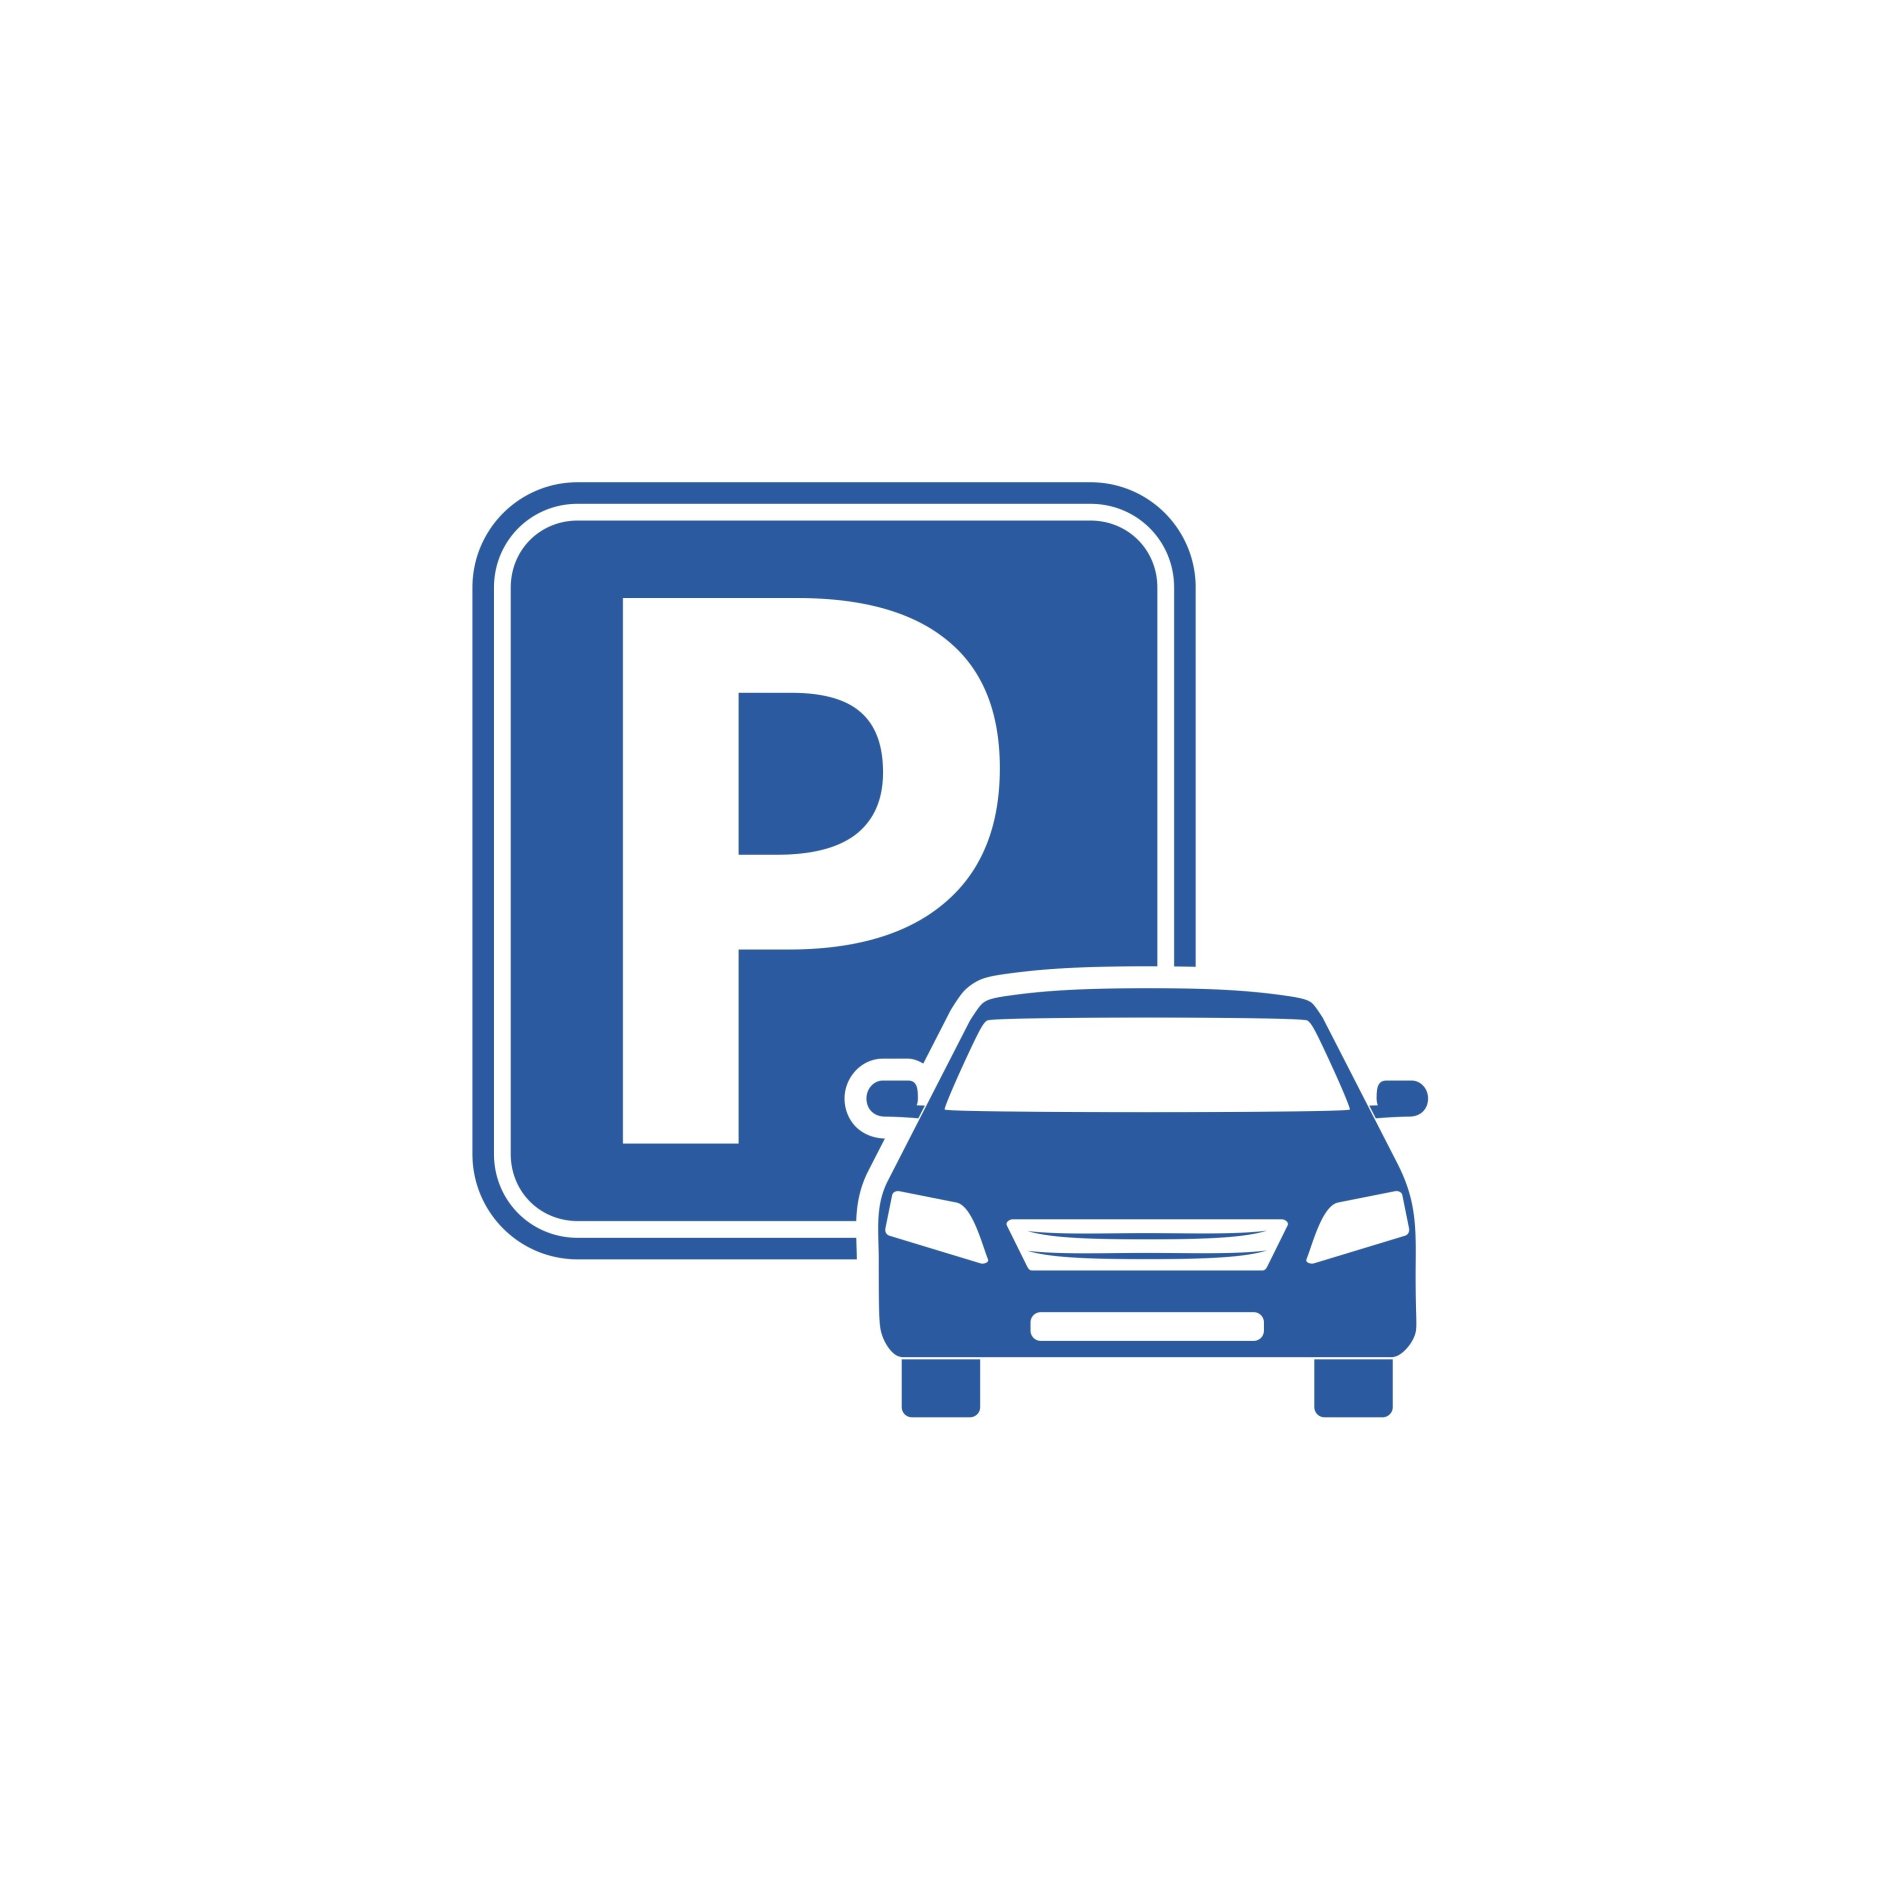 Parkplatz Schild und Fahrzeug beides in der Farbe blau.